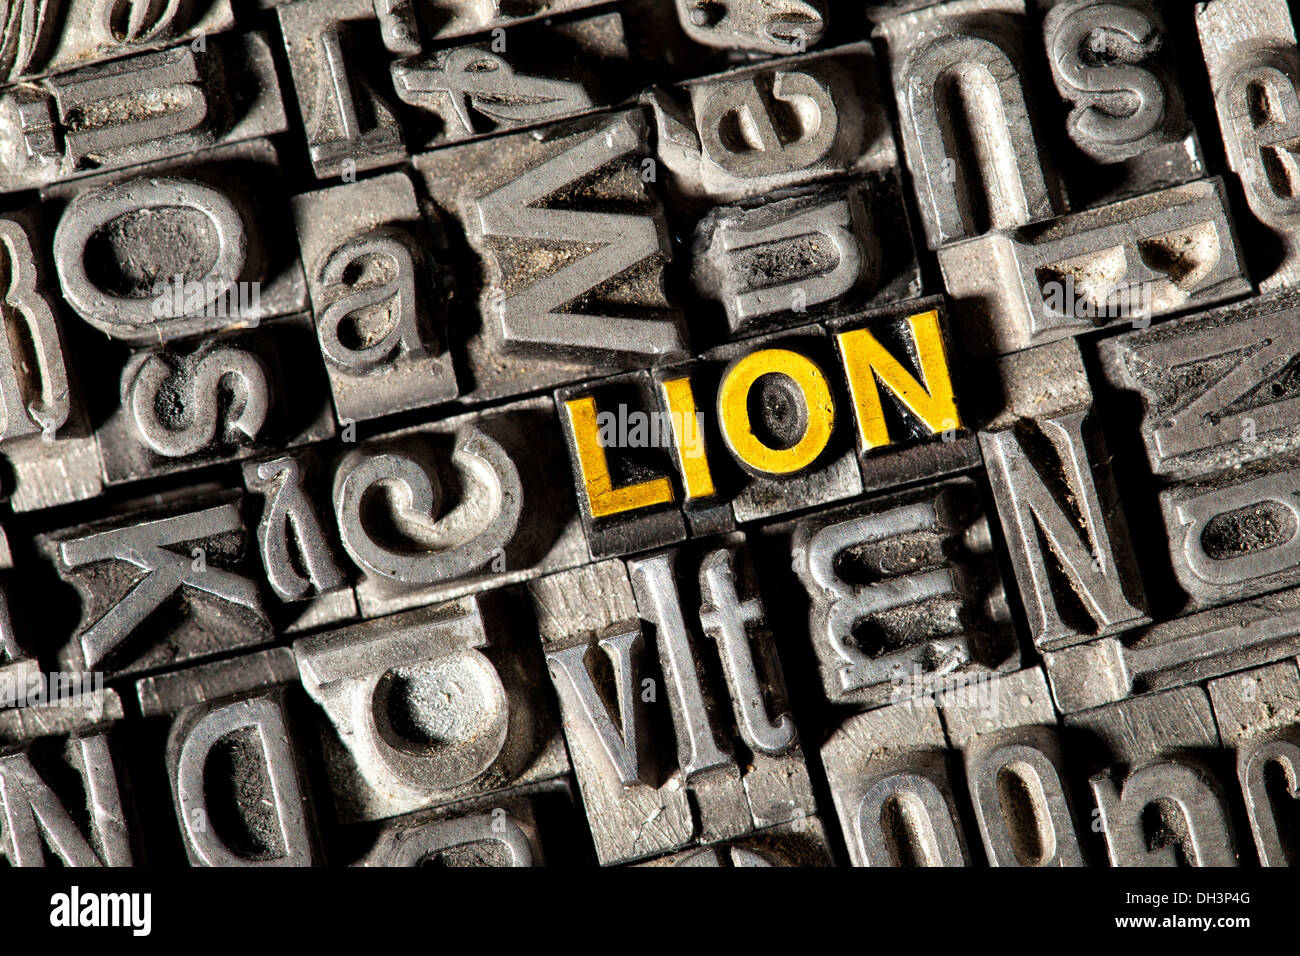 Vecchio portano lettere che compongono la parola "lion" Foto Stock